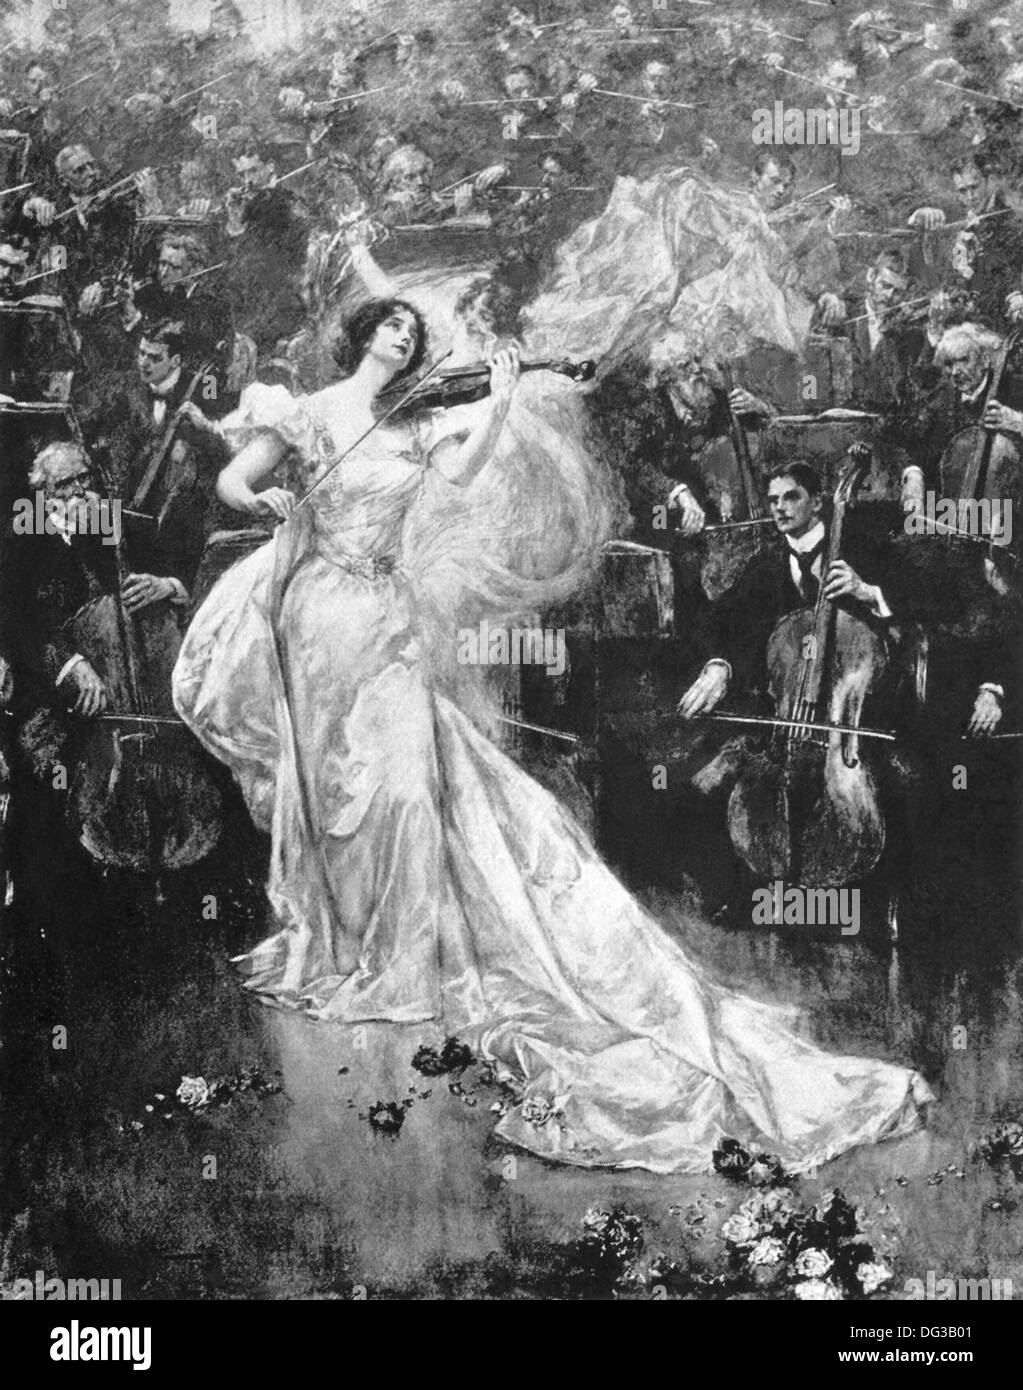 Questa illustrazione è apparso a Londra-basata di Penrose pittorica di annuale 1900. Questa immagine mostra una donna giocando un concerto di violino. Foto Stock